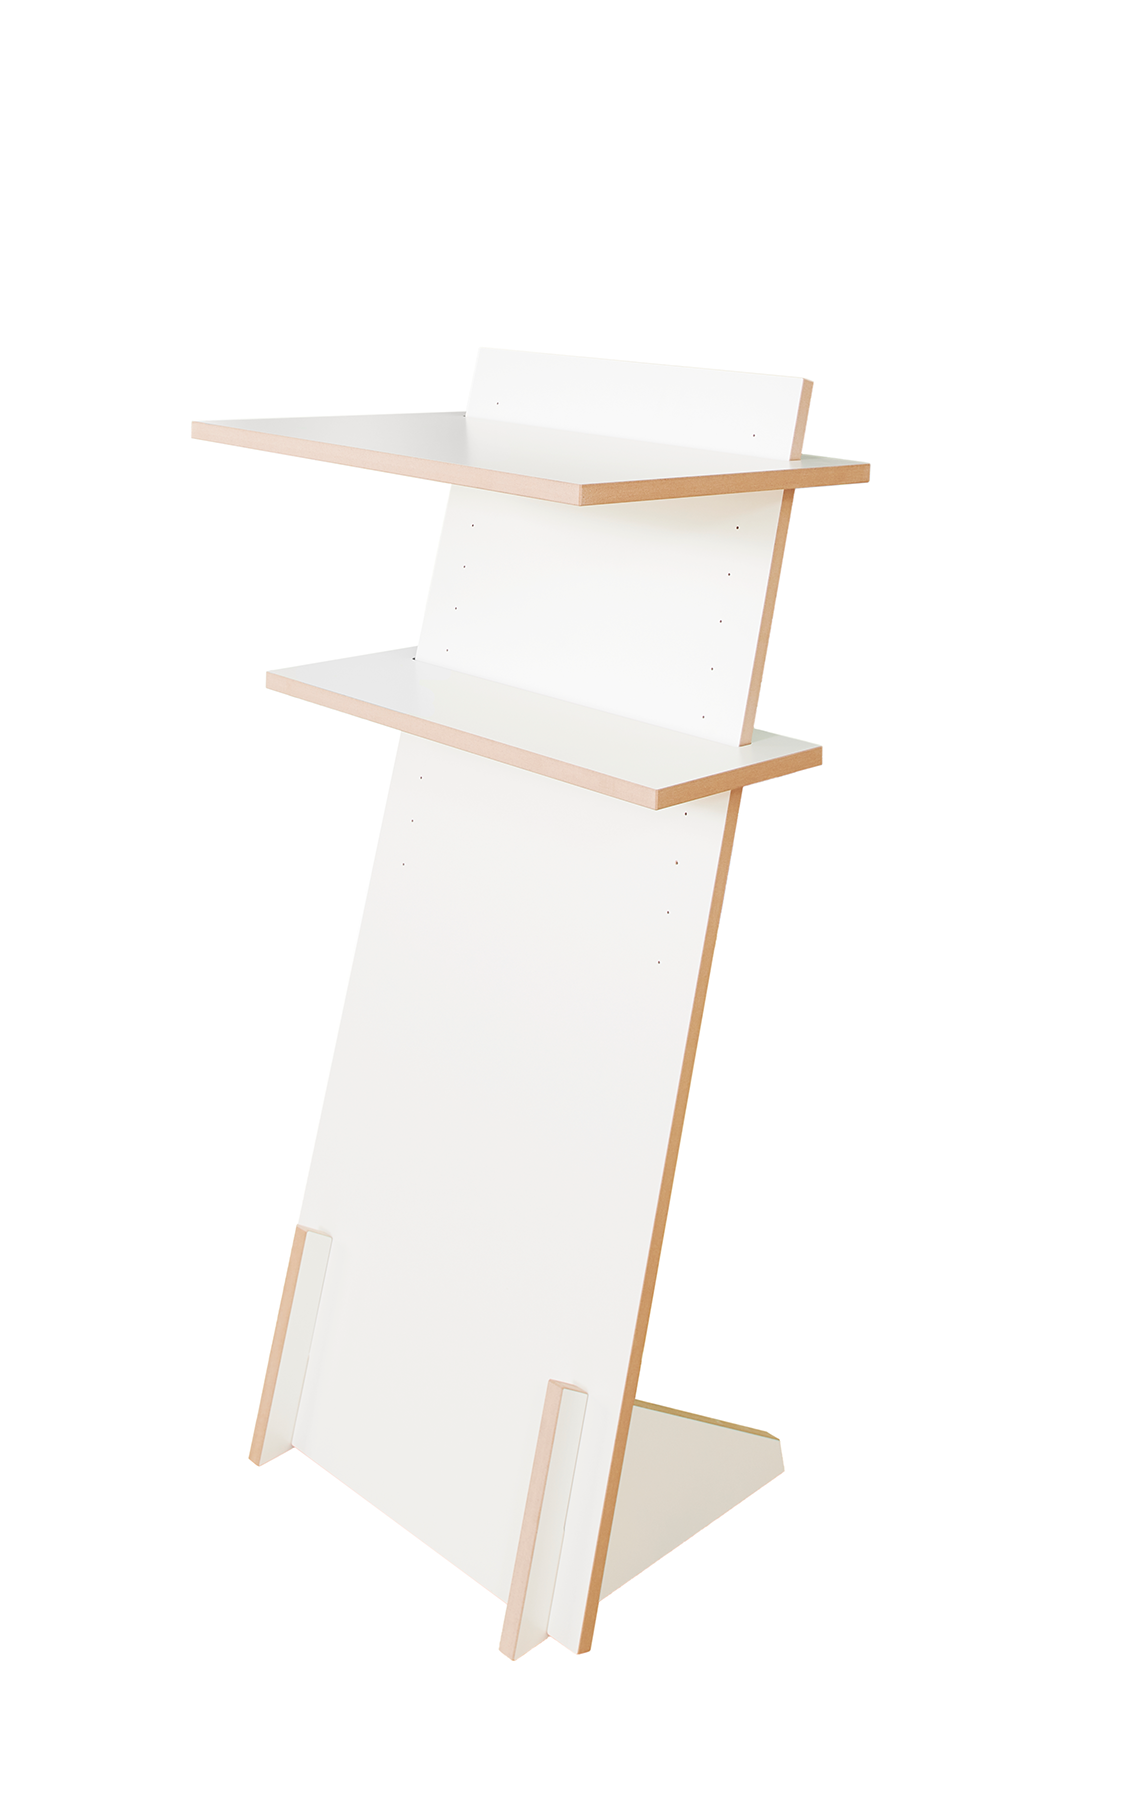 Tojo-pult in weiss präsentiert im Onlineshop von KAQTU Design AG. Schreibtisch ist von Tojo